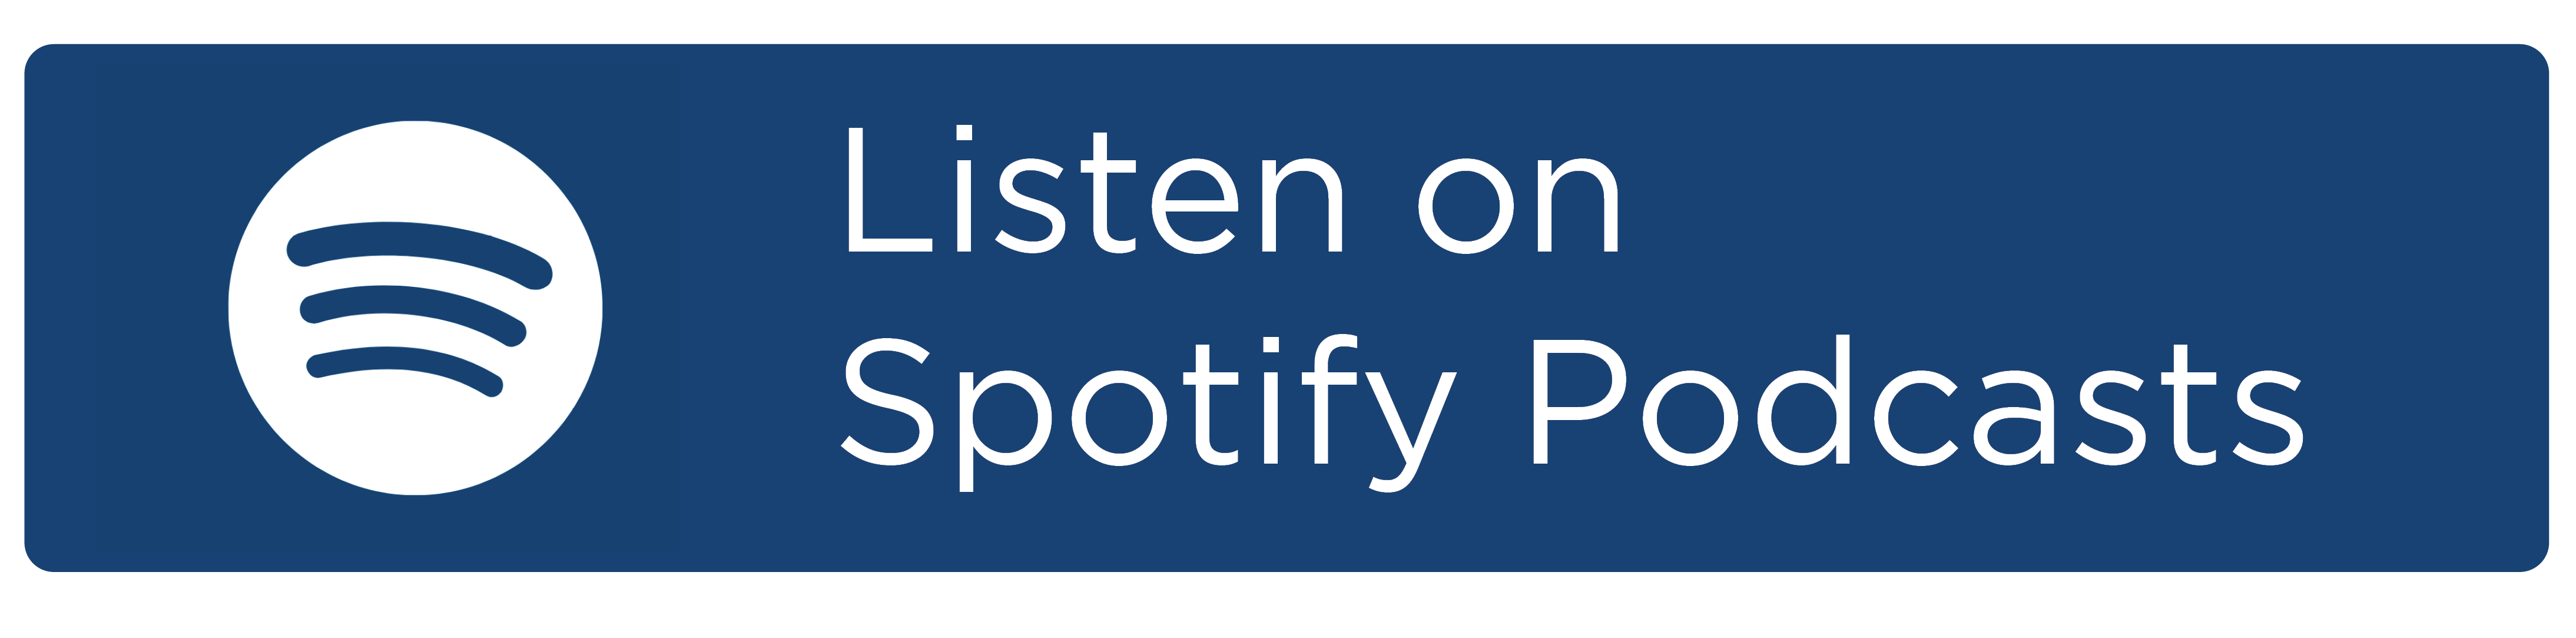 Listen on spotify